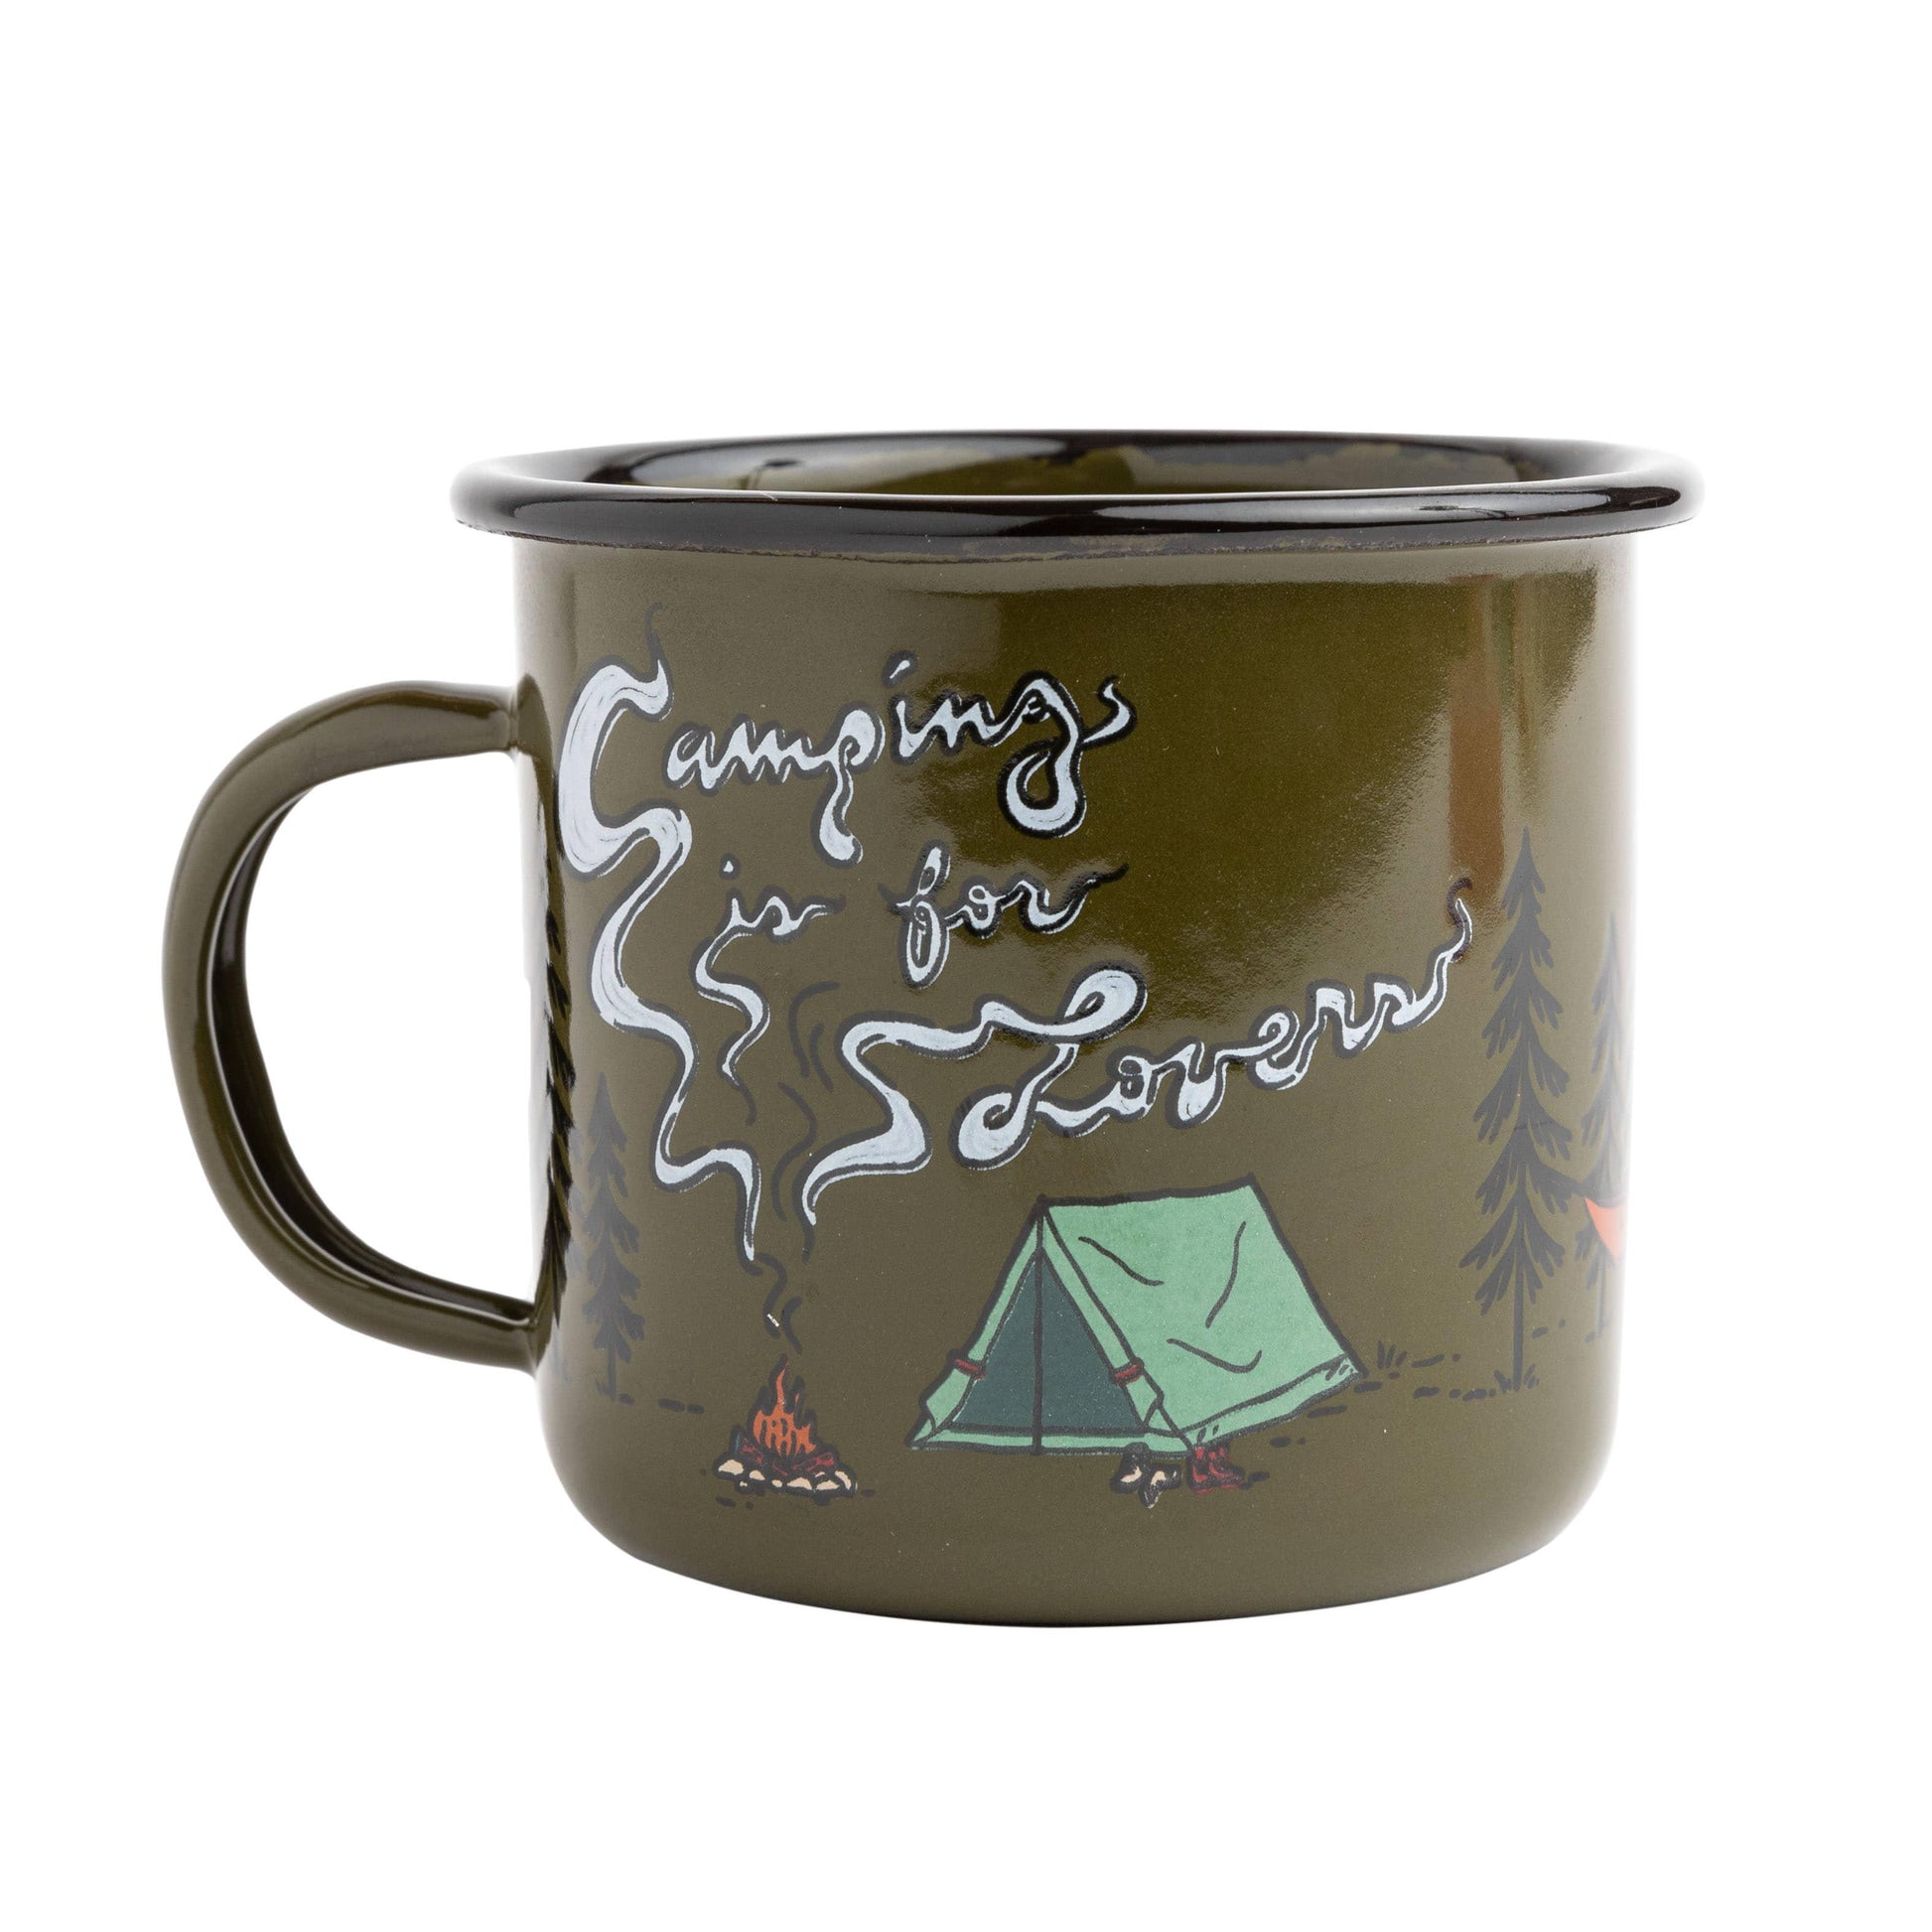 Camping Is for Lovers Enamel Mug. Handmade Enamelware. Trek Light